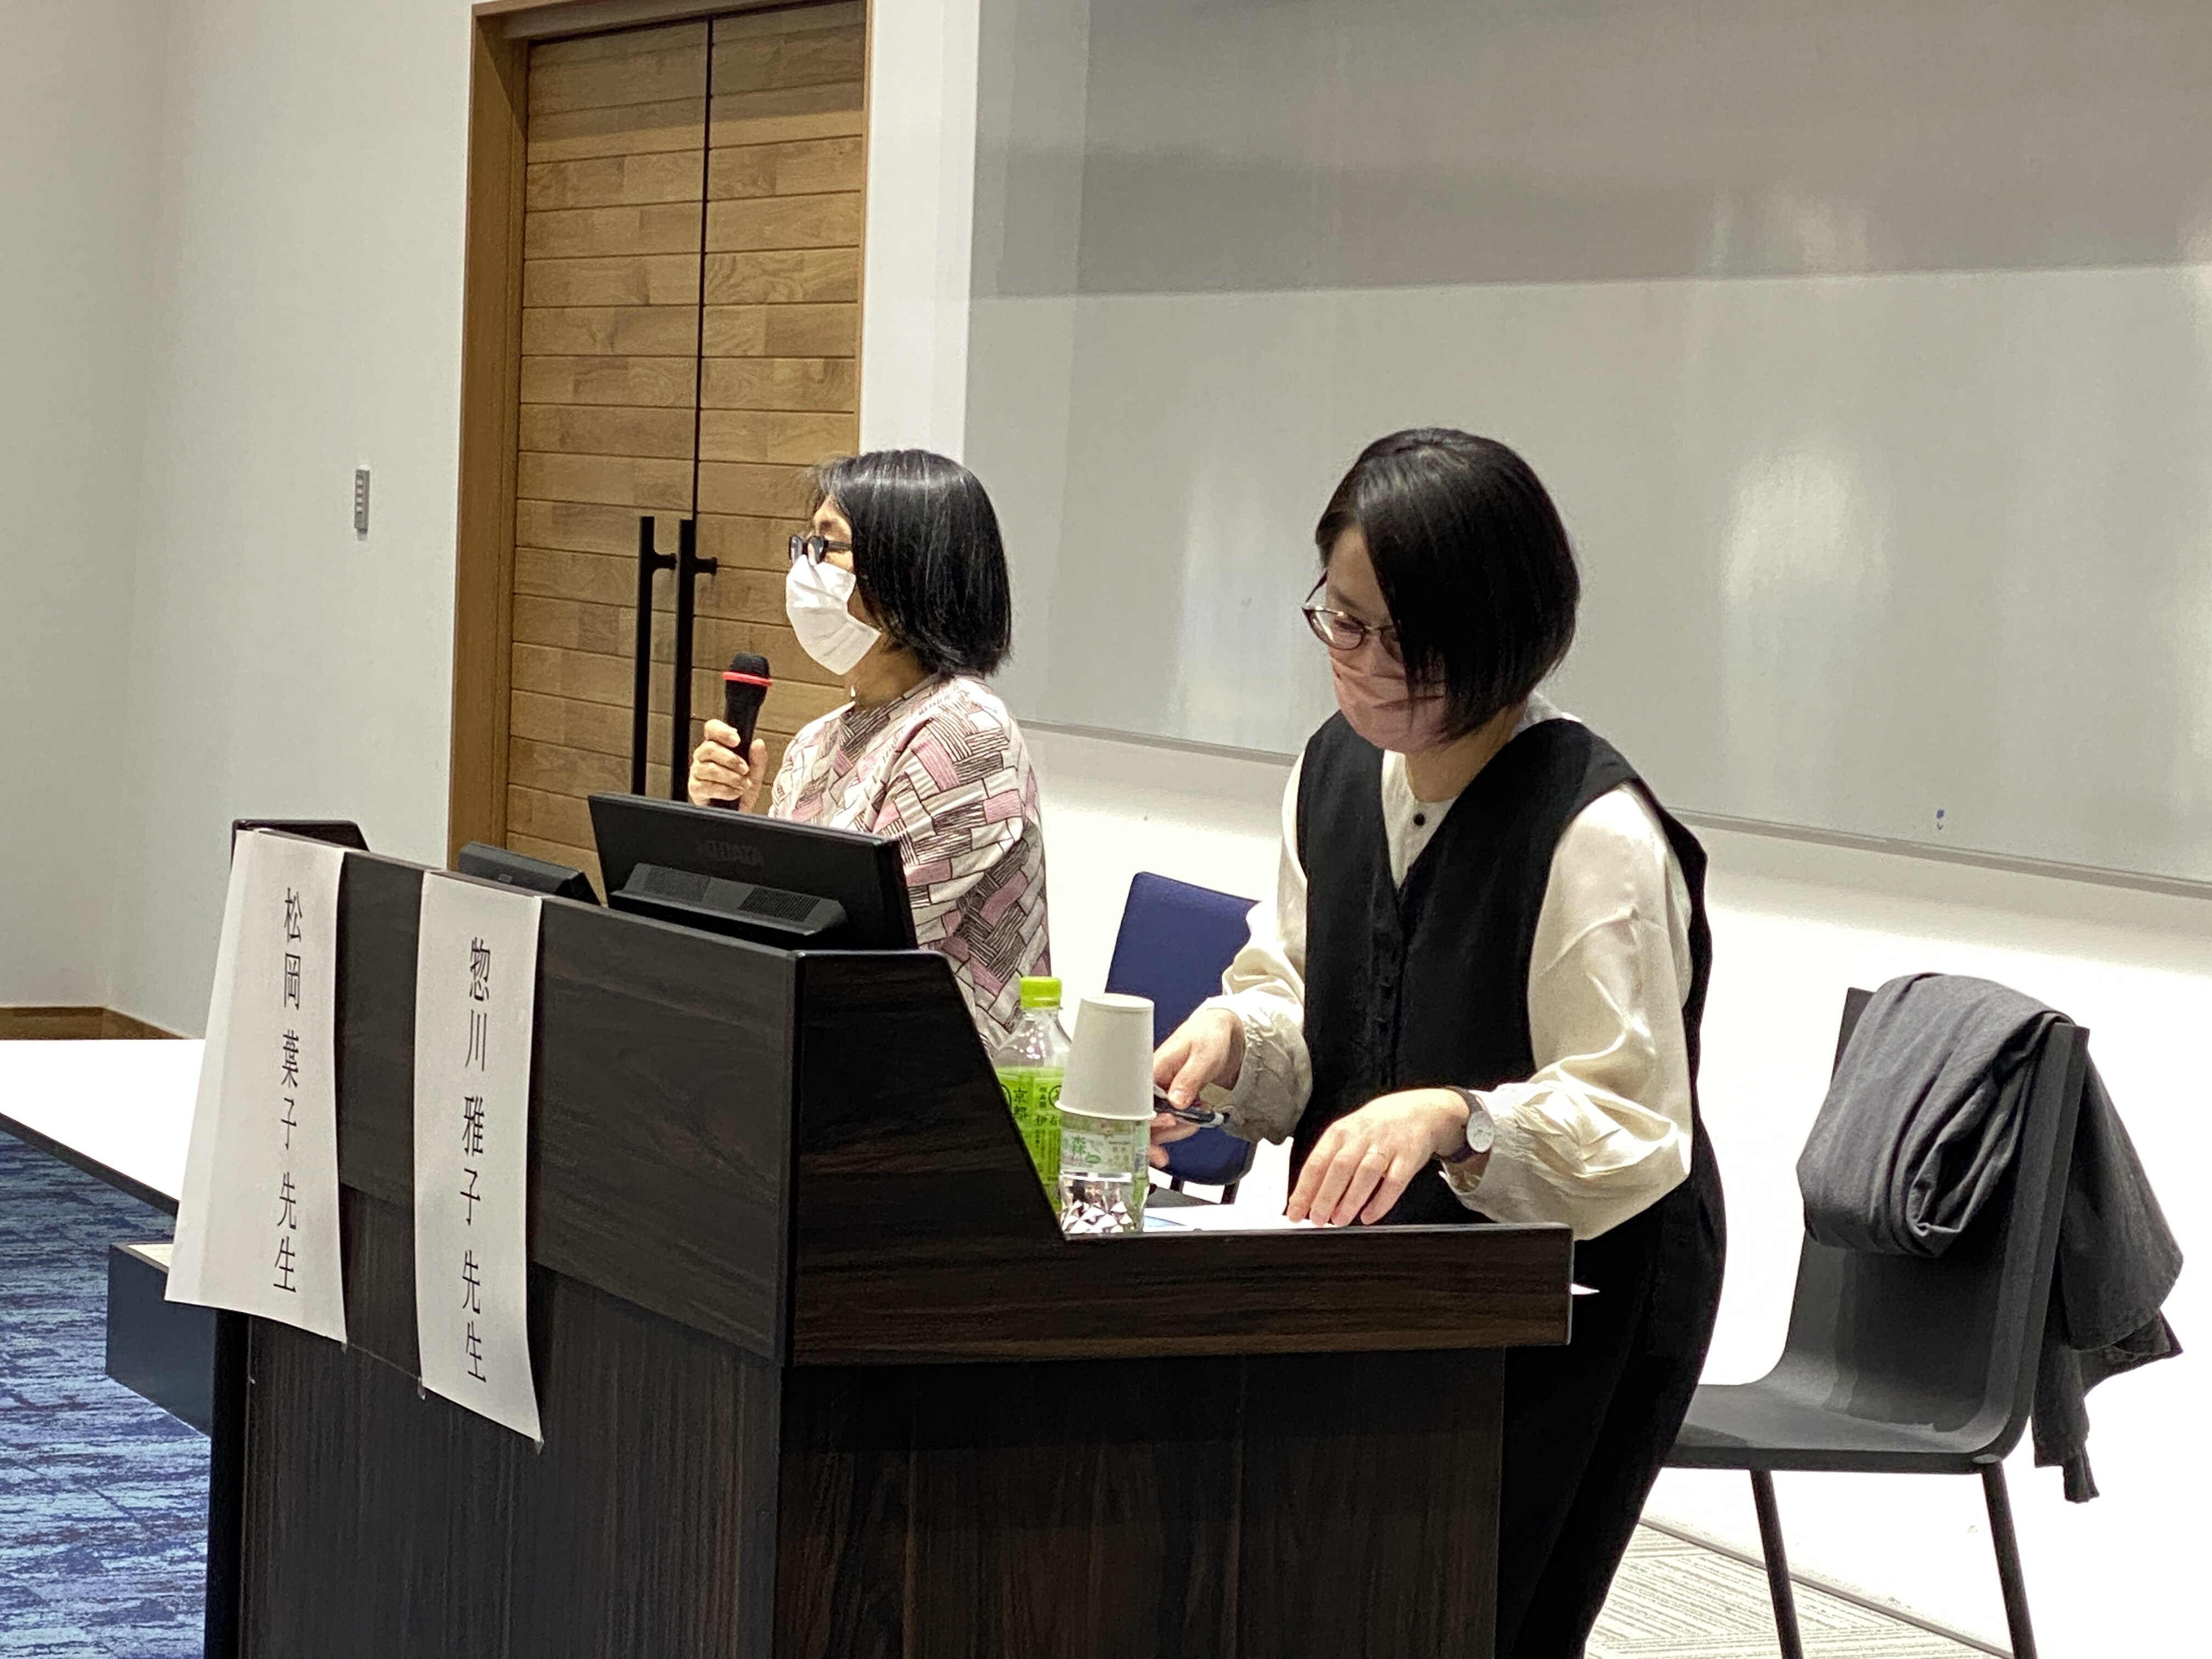 左から、松岡葉子さん、惣川雅子さん